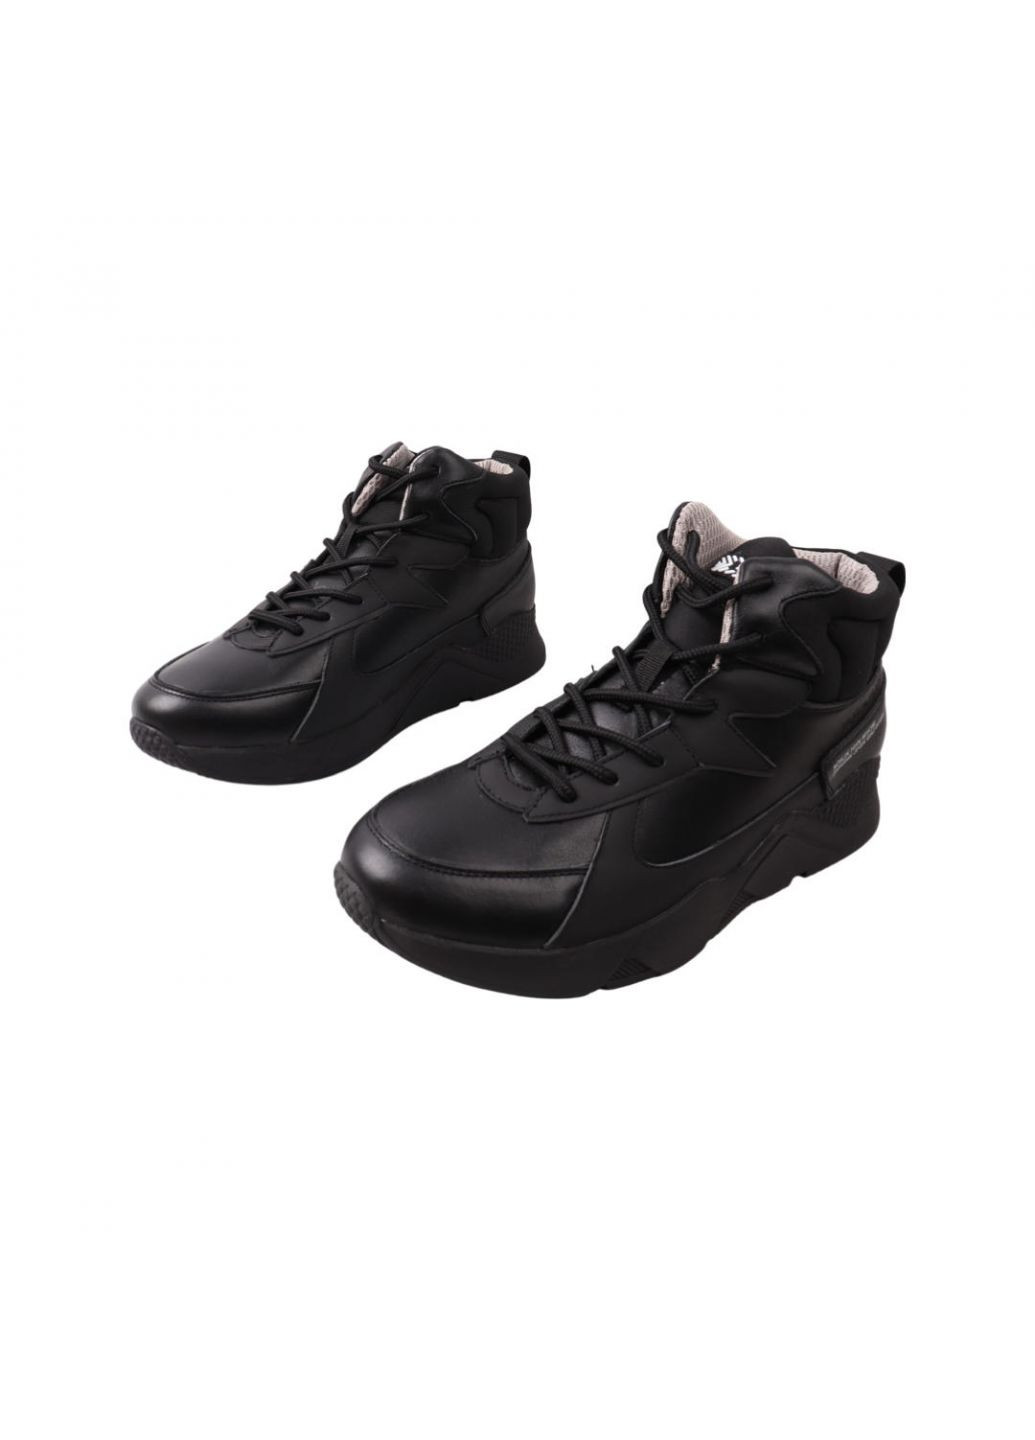 Черные ботинки мужские черные натуральная кожа Brave